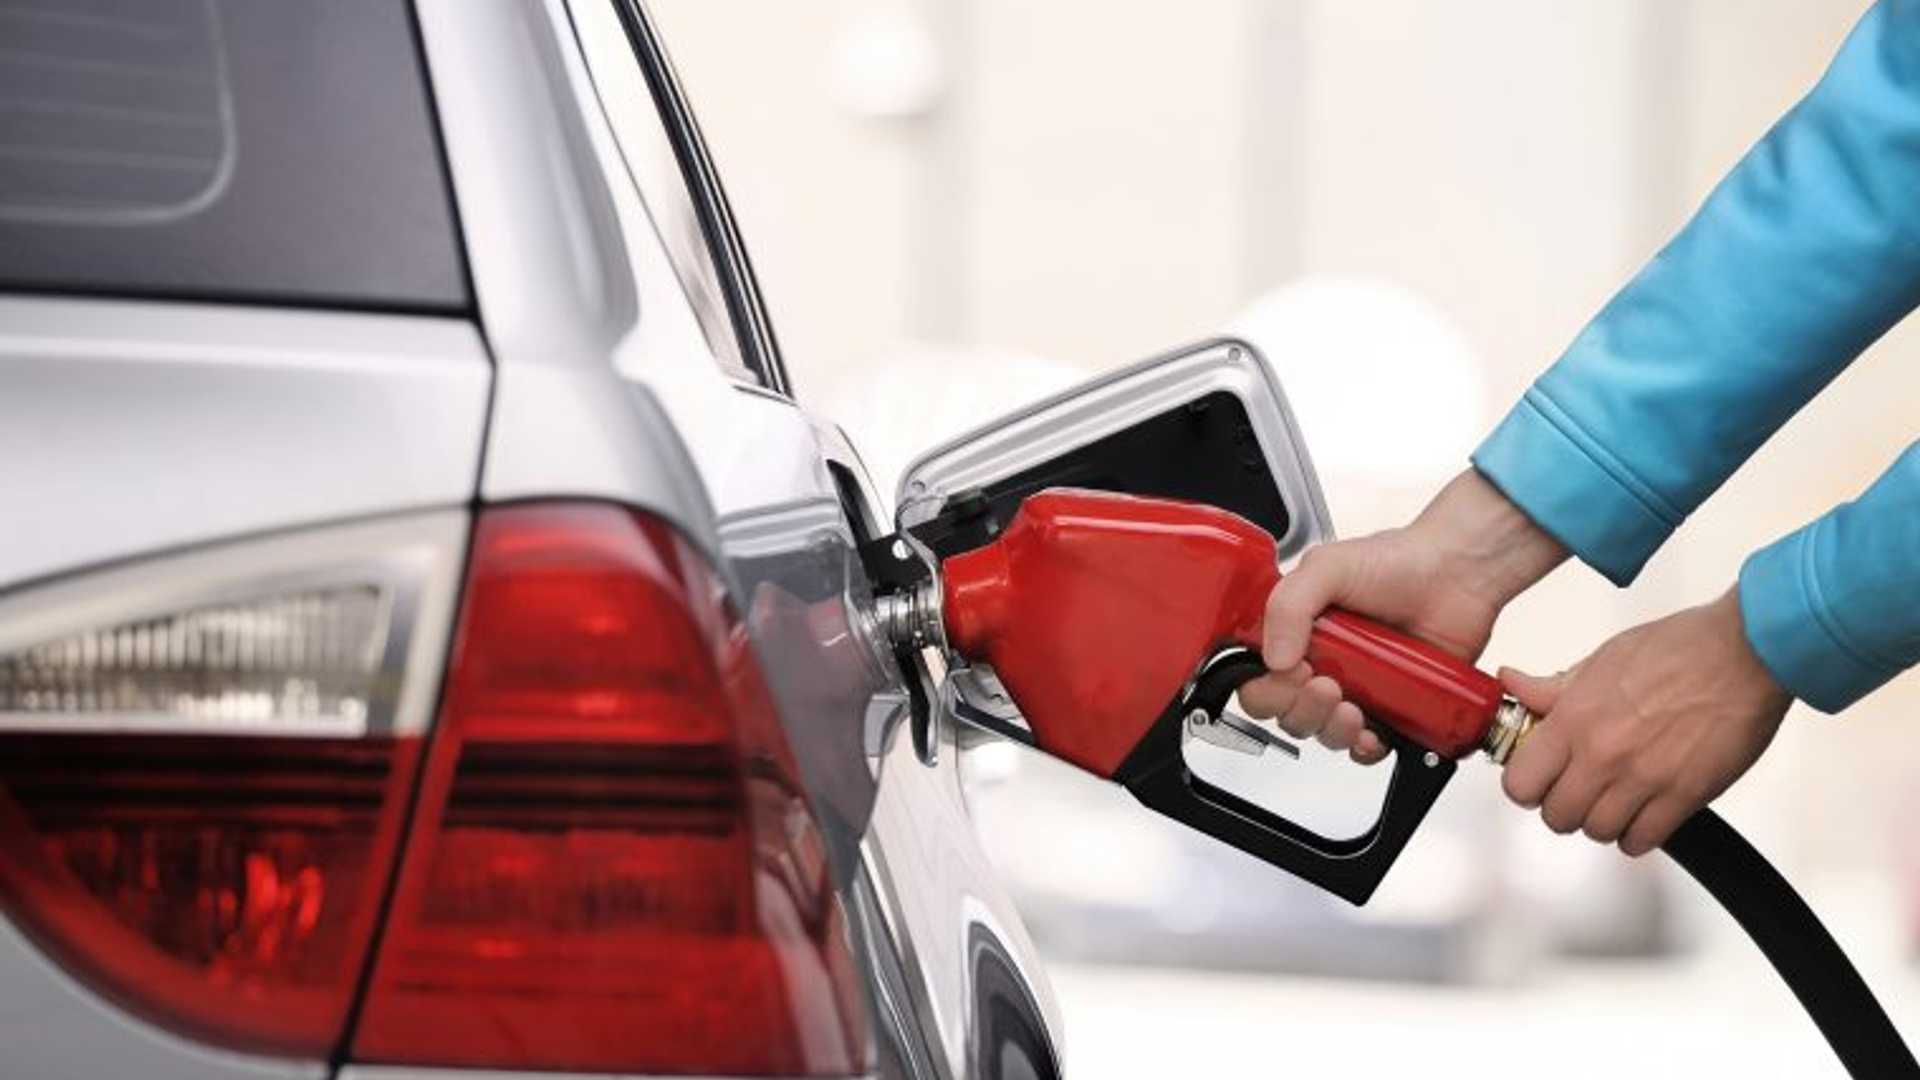 شركة محروقات: استهلاك البنزين انخفض حالياً إلى النصف بعد حظر التجول ومنع التنقل بين الأرياف والمدن